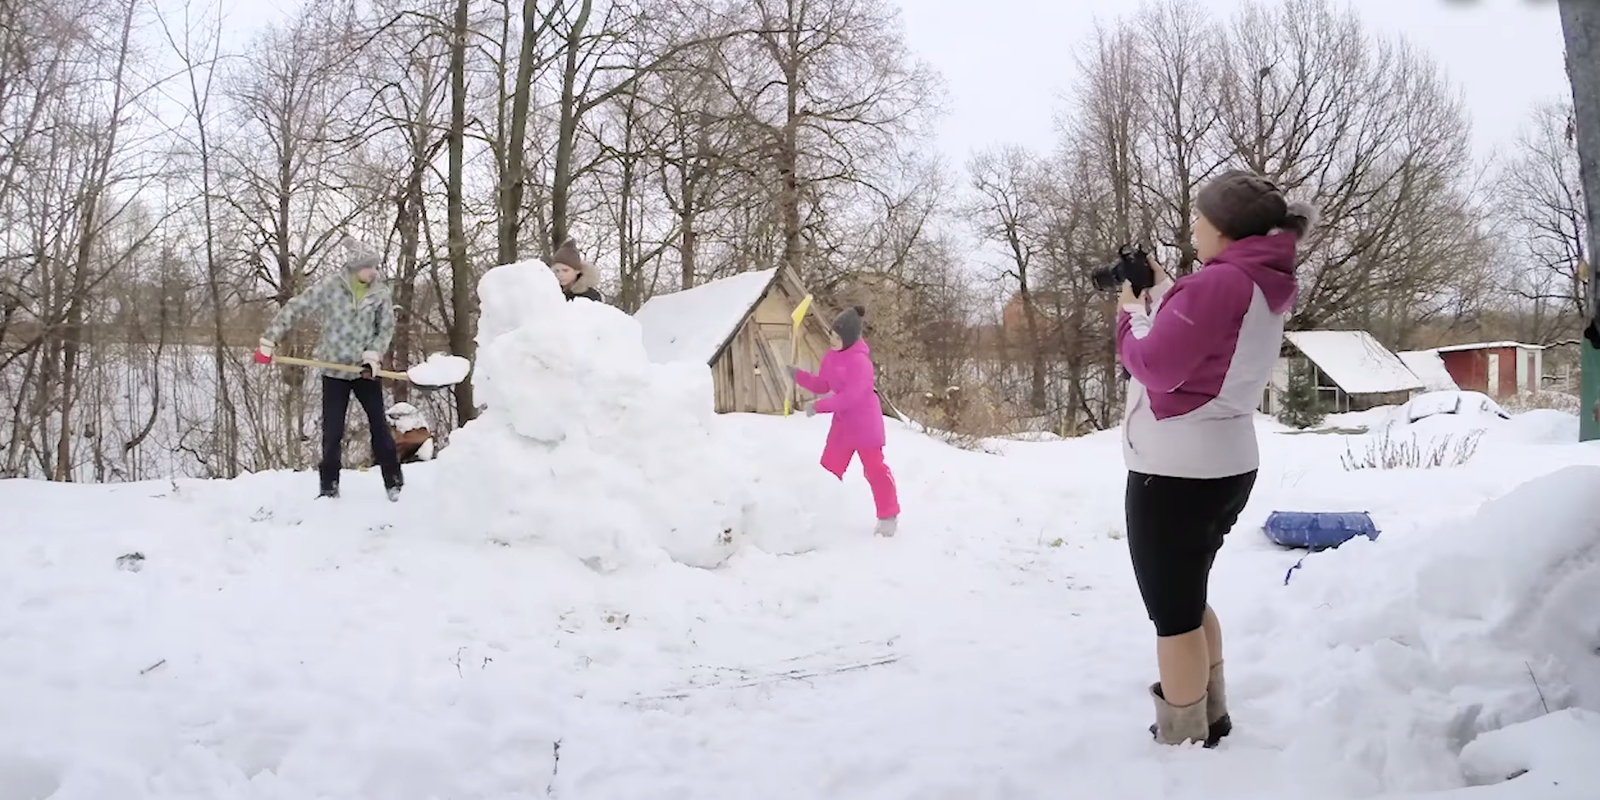 Снежные забавы: что строят ижевчане из снега у себя во дворах